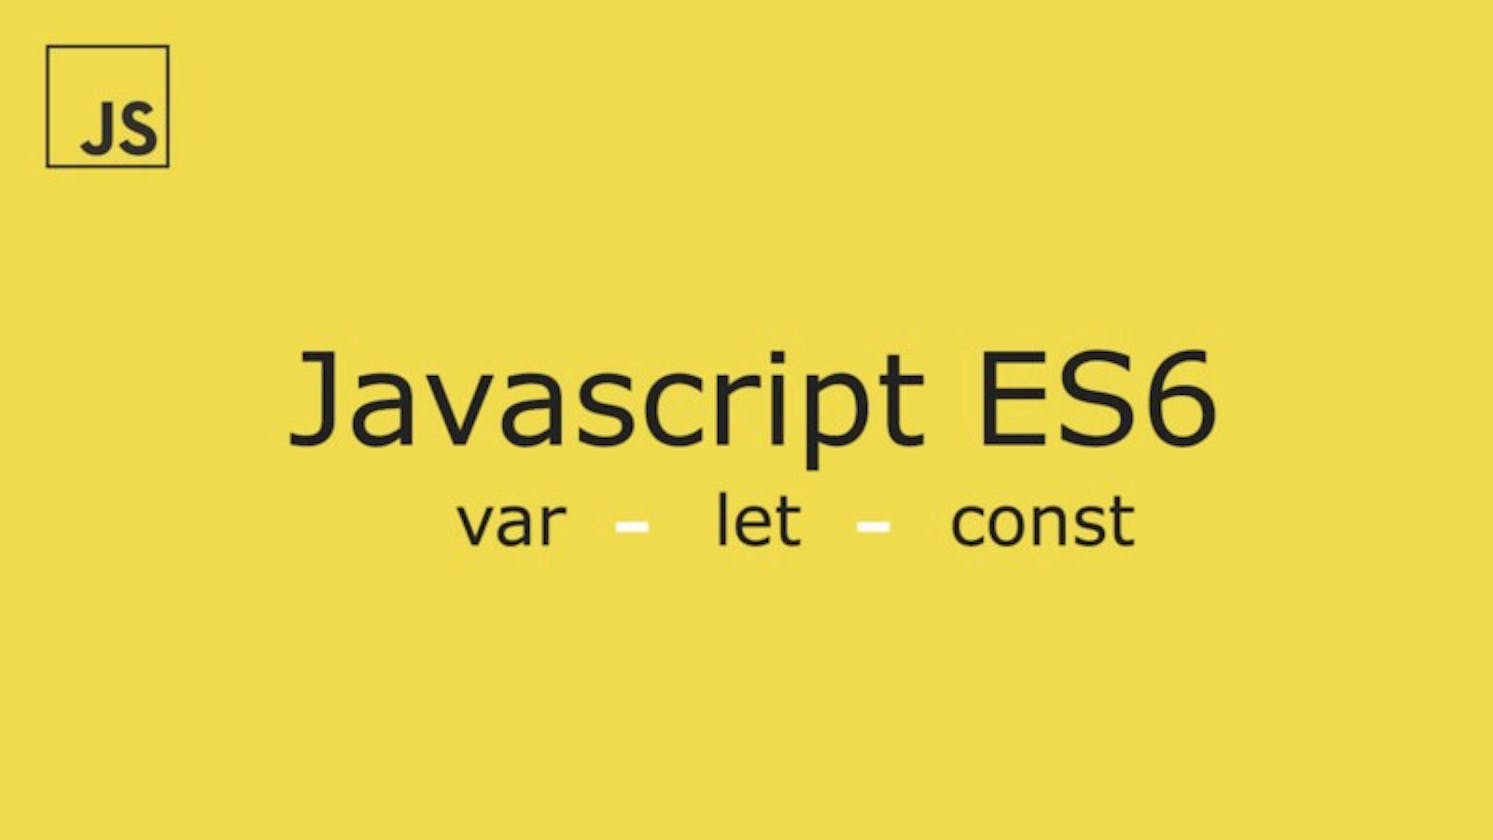 Variables in JavaScript